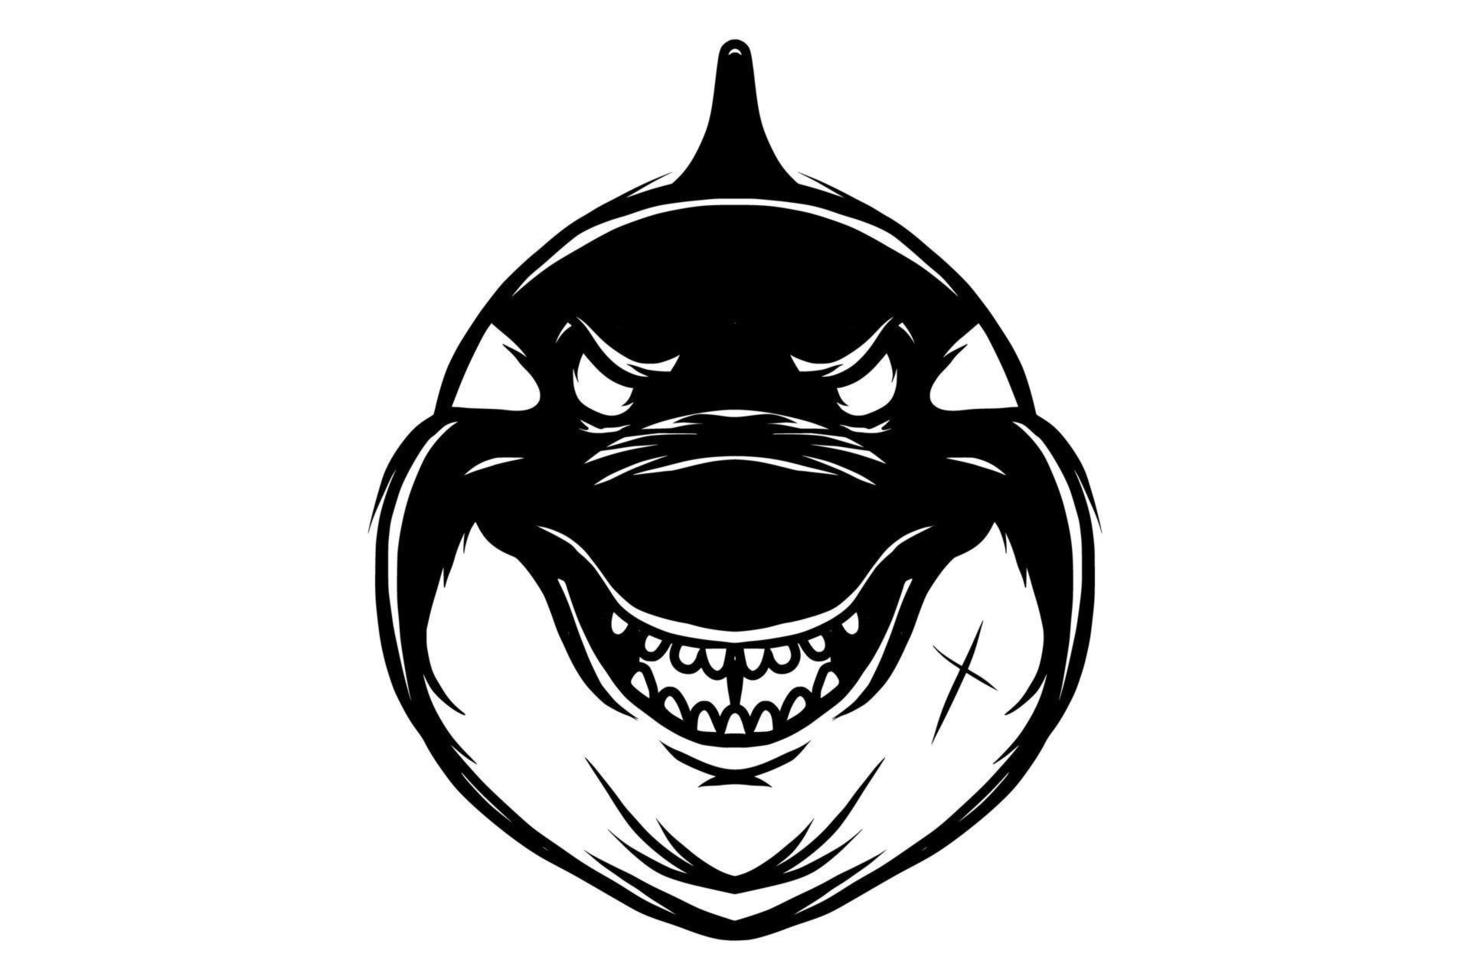 vetor de cabeça de baleia orca preto e branco